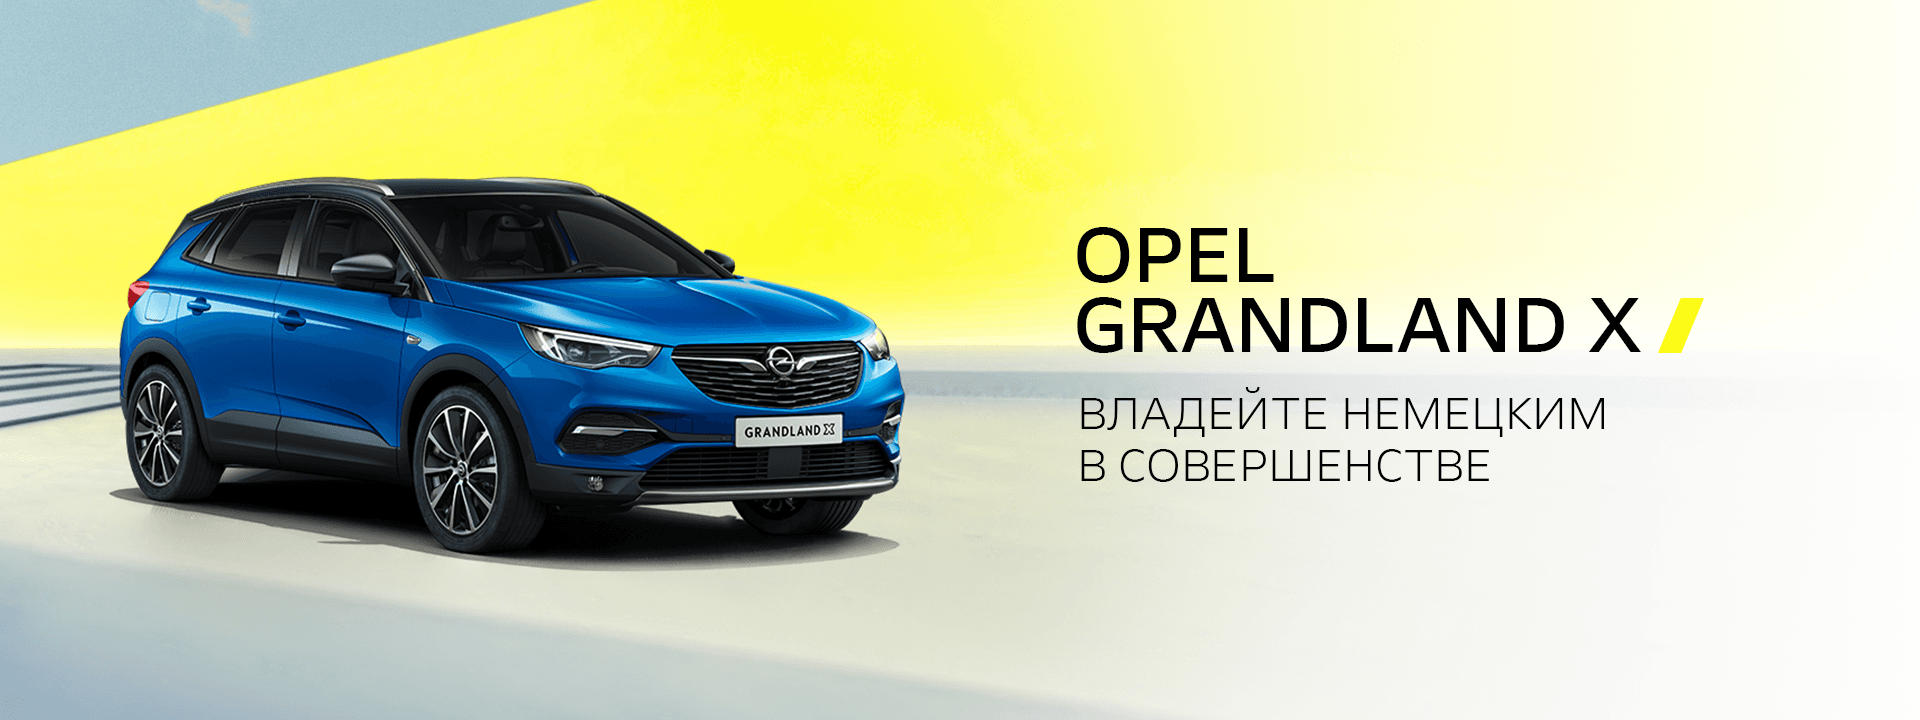 Новый автомобиль Opel Grandland X